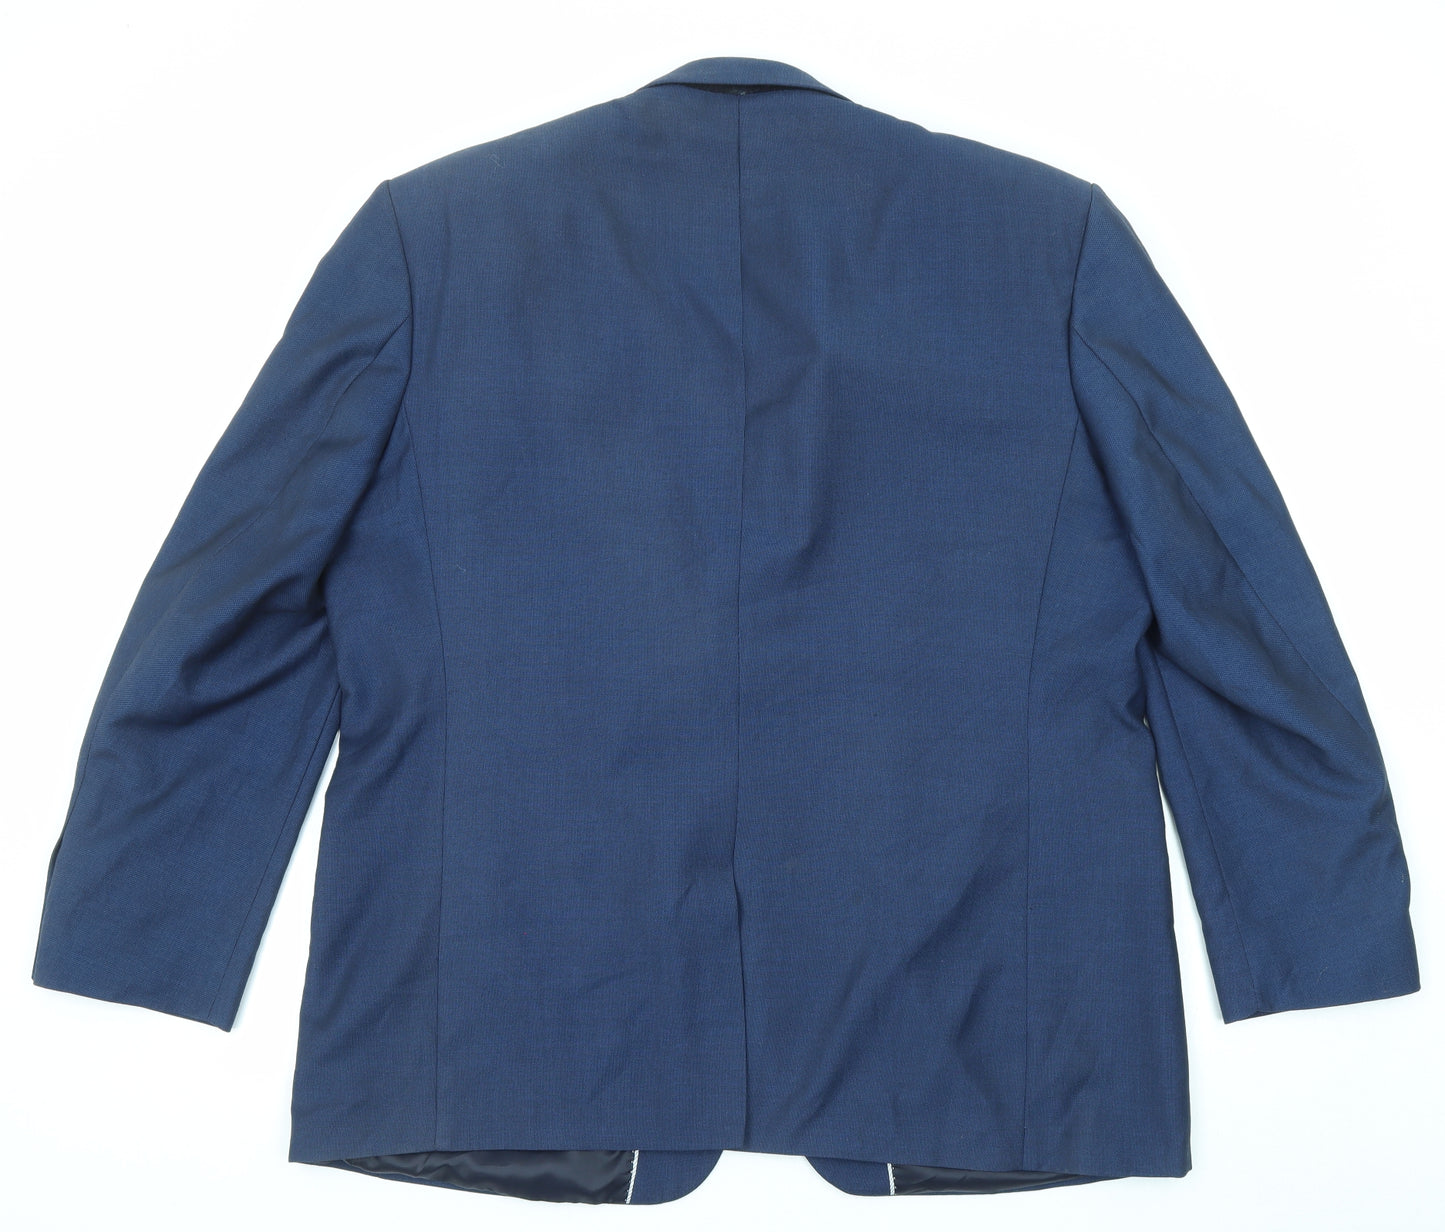 Centaur Mens Blue Polyester Jacket Suit Jacket Size 48 Regular